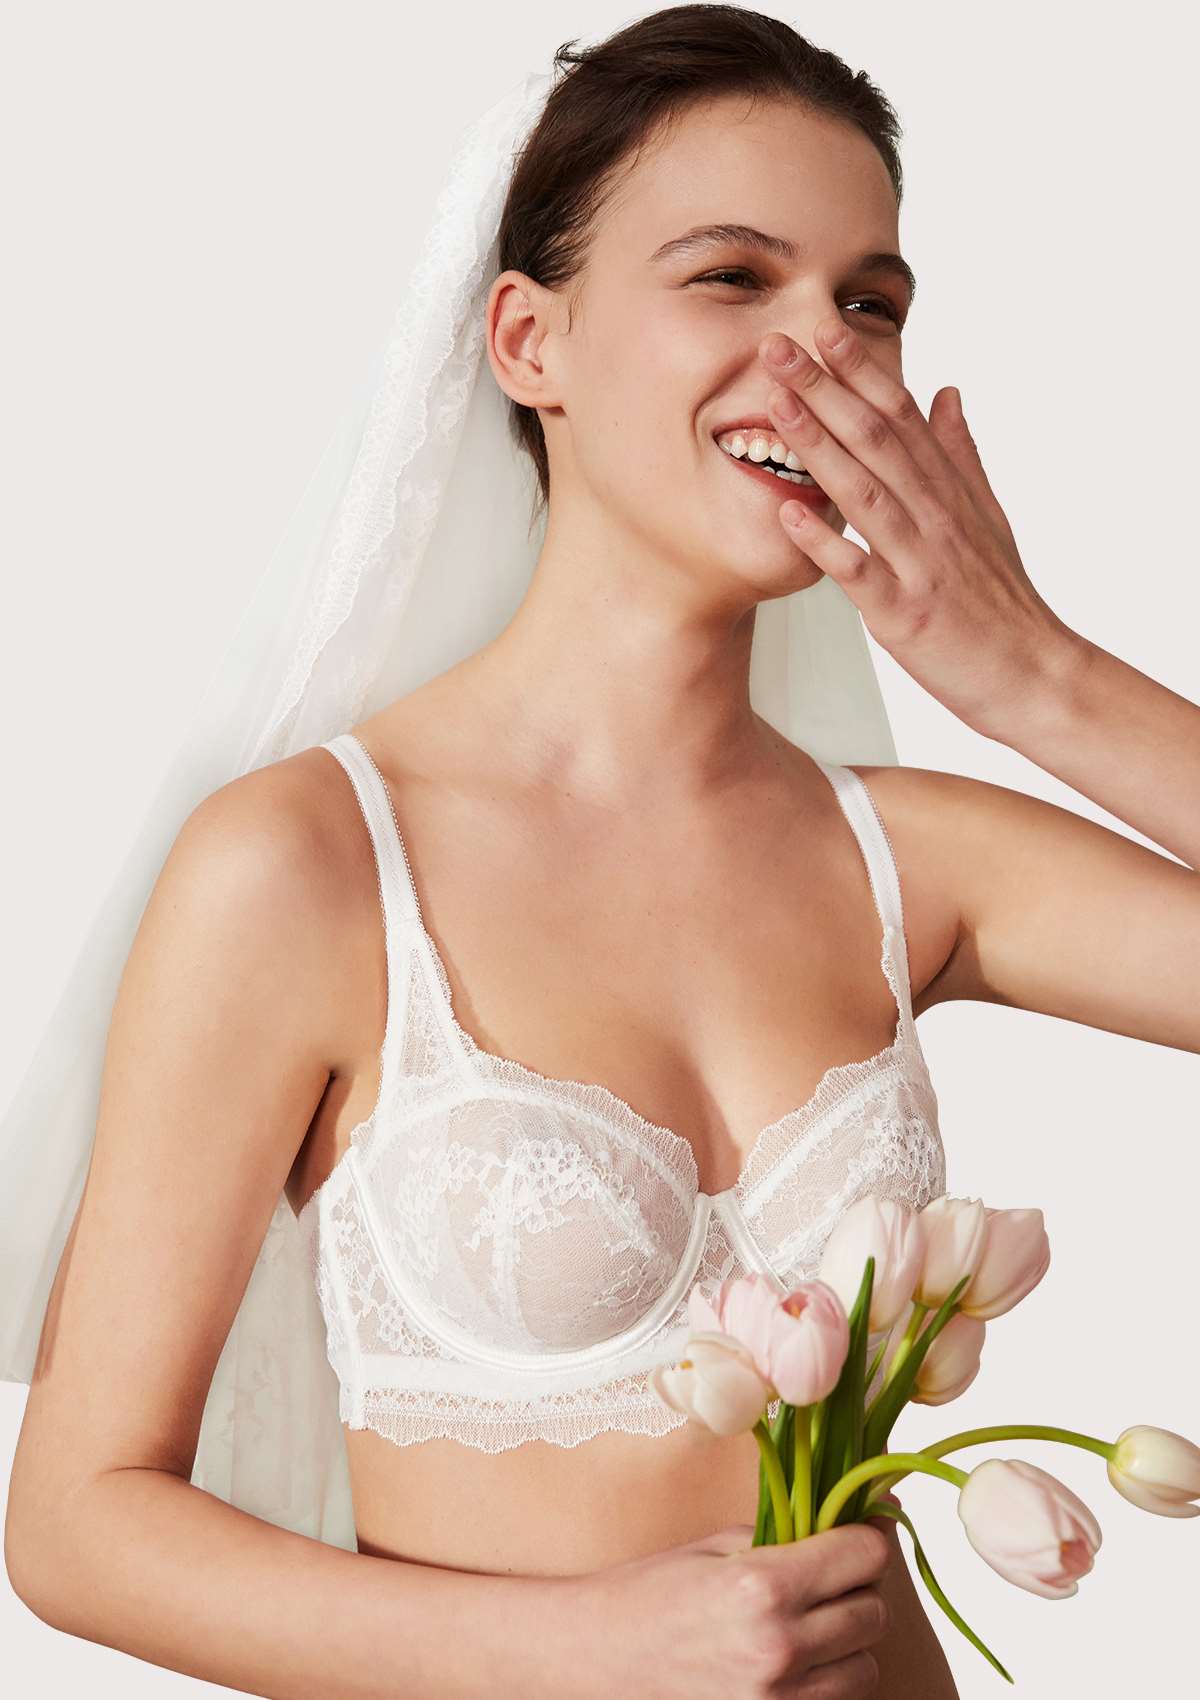 HSIA Floral Lace Unlined Bridal Romantic Balconette Bra Panty Set  - White / 36 / C